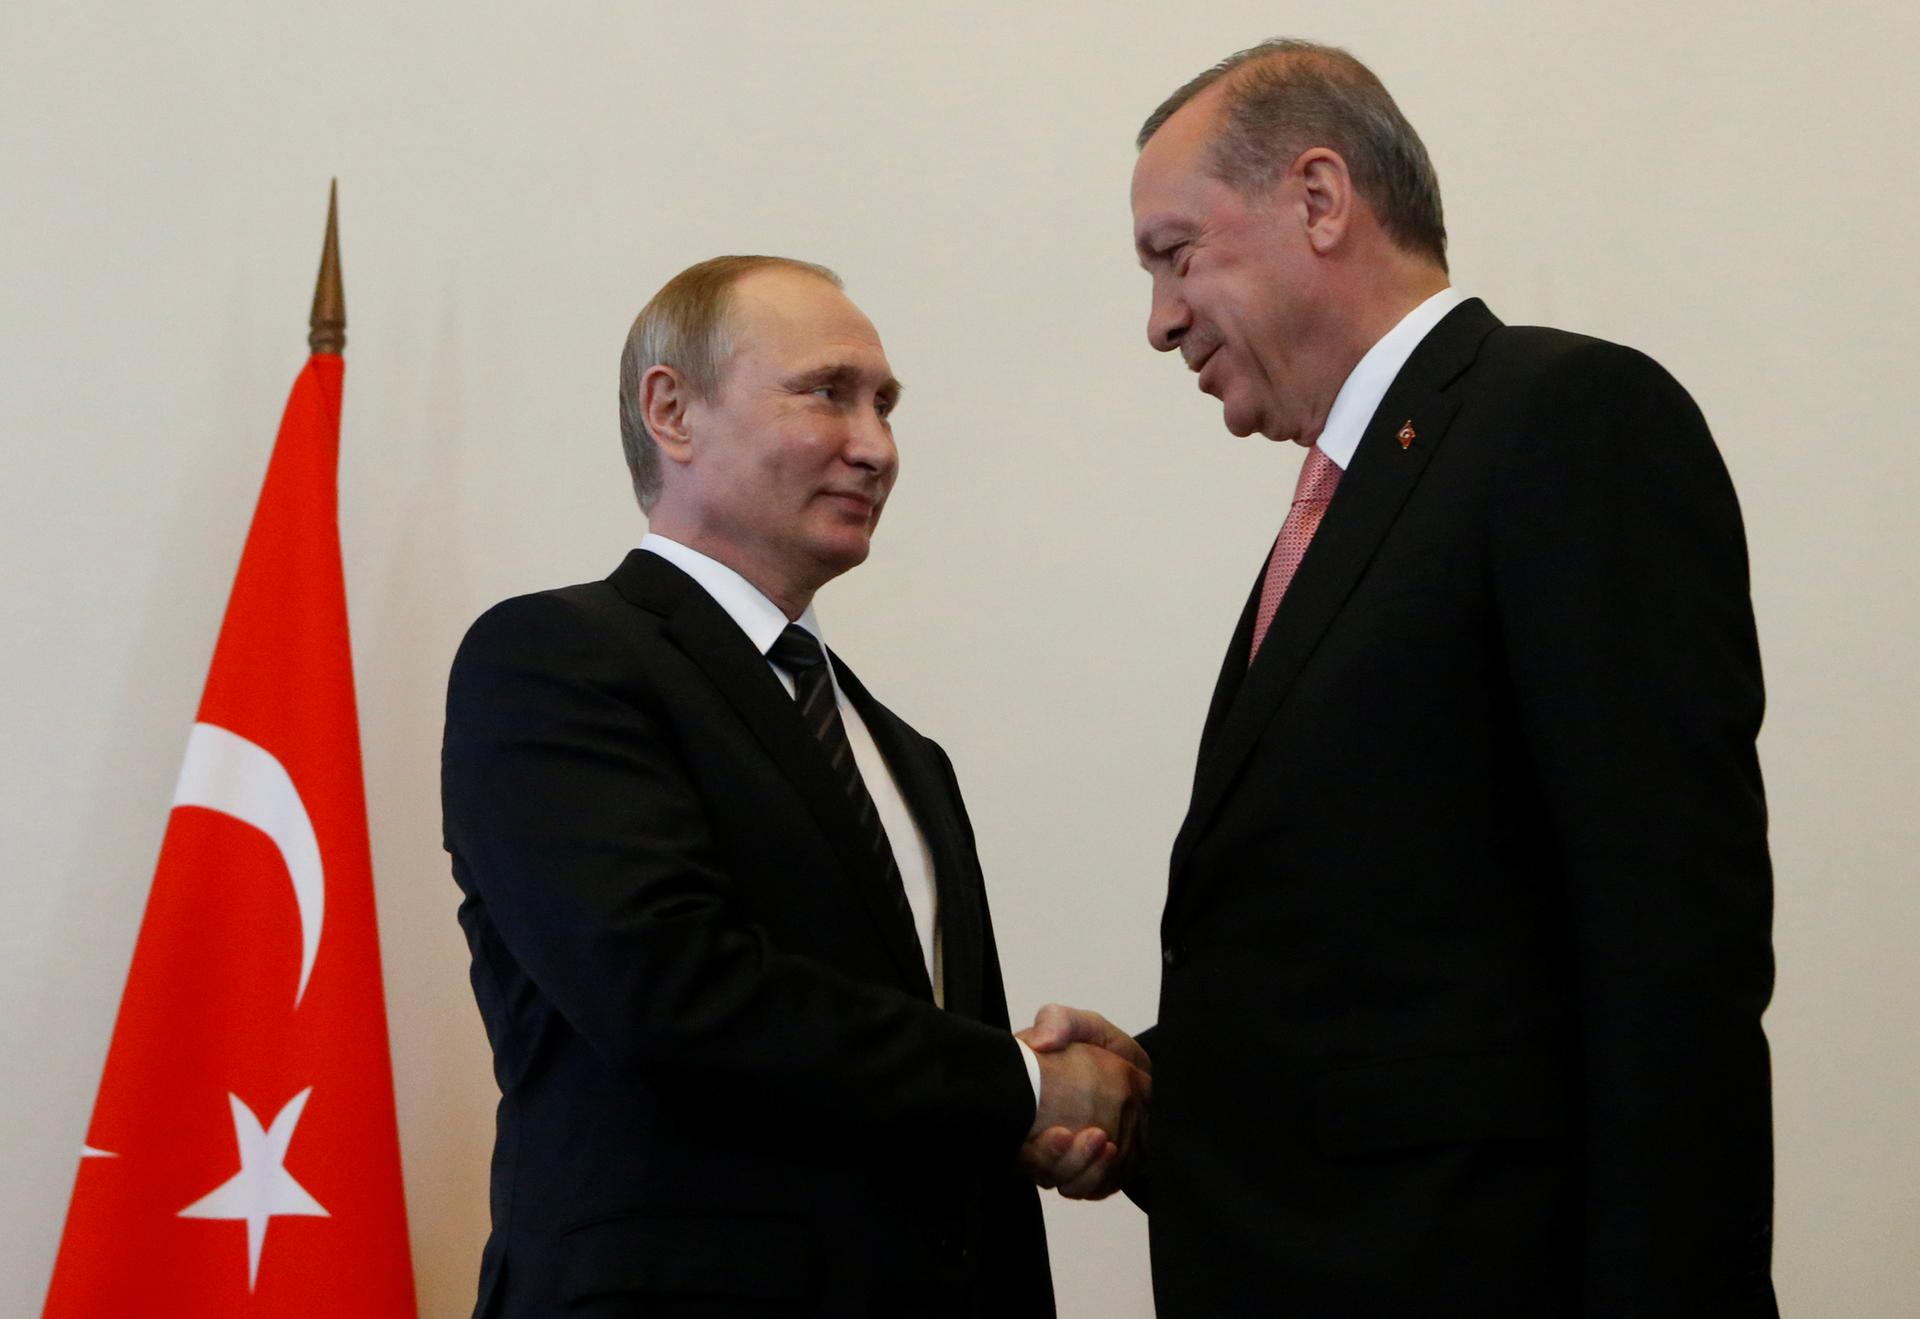 Putin and Erdogan Handshake